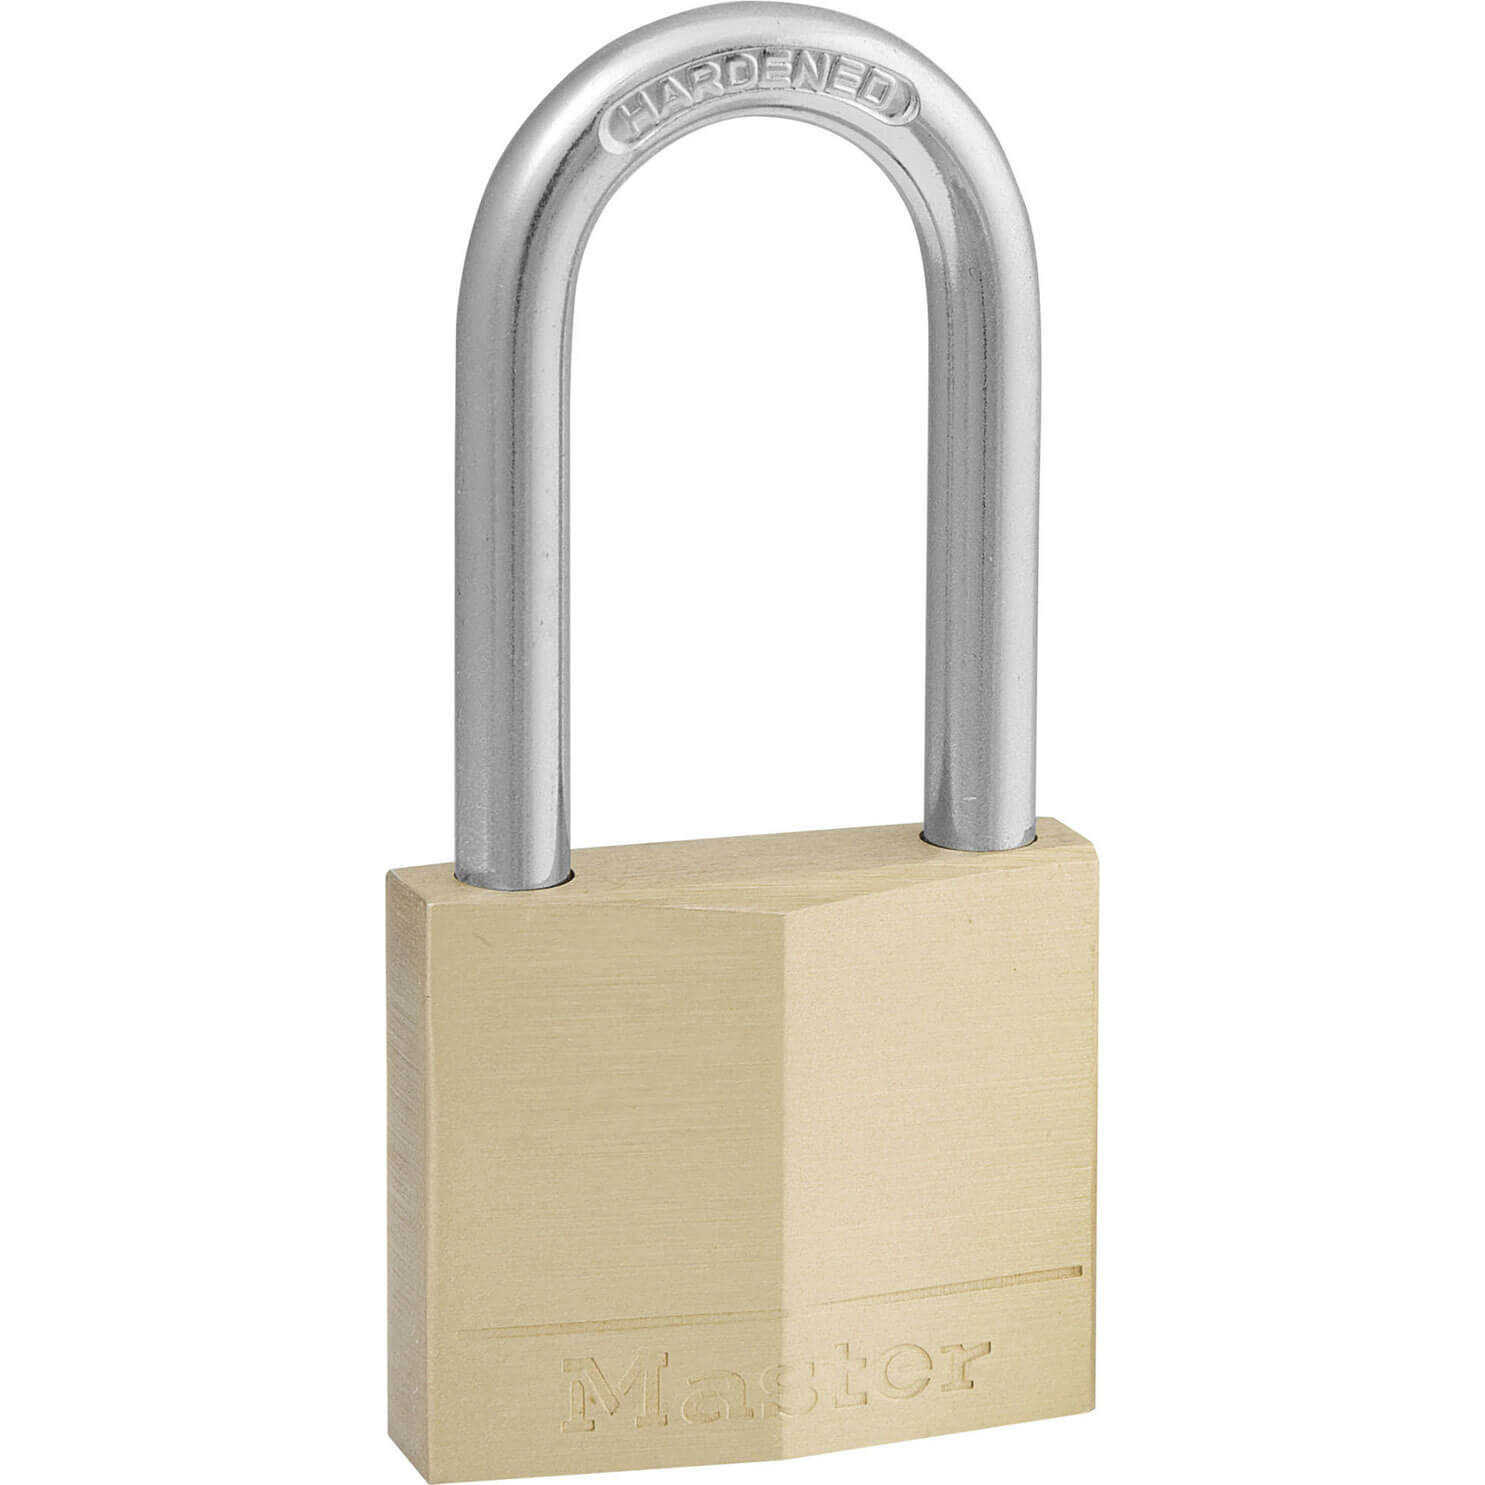 Photos - Door Lock Master Lock Masterlock Solid Brass Padlock 40mm Long 140LF 